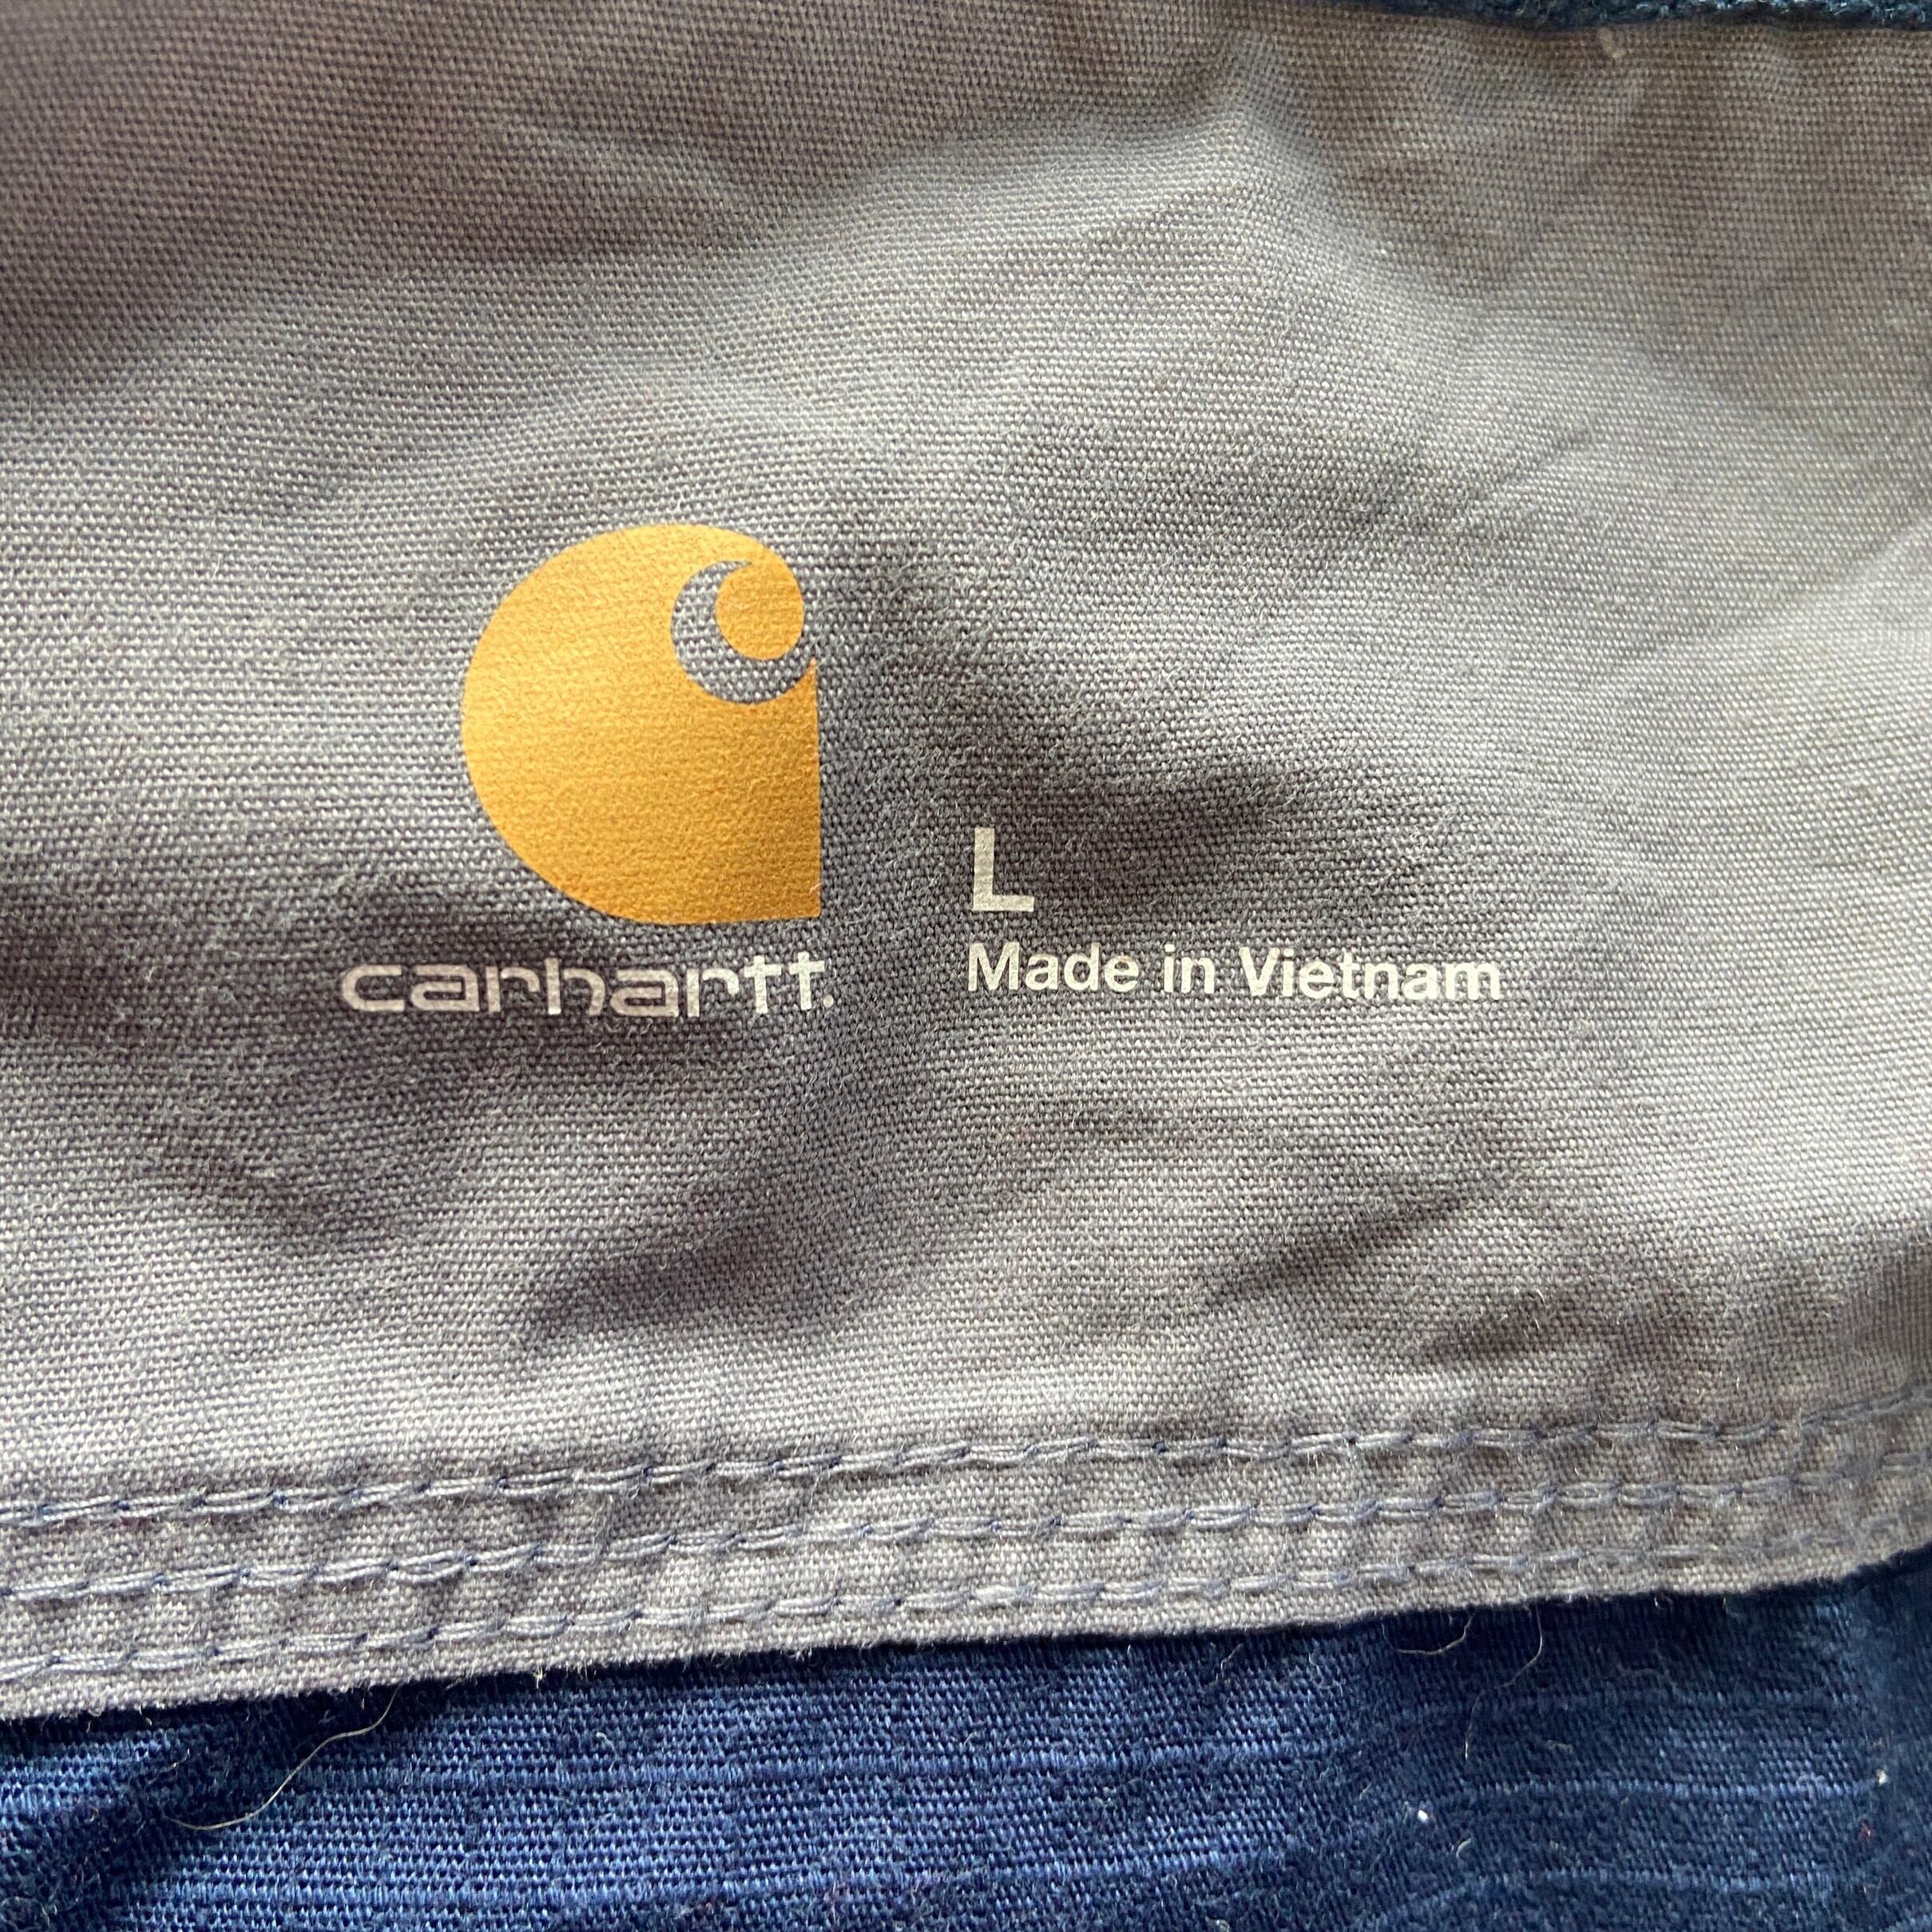 Carhartt カーハート 企業ロゴ刺繍 リップストップ ワークジャケット